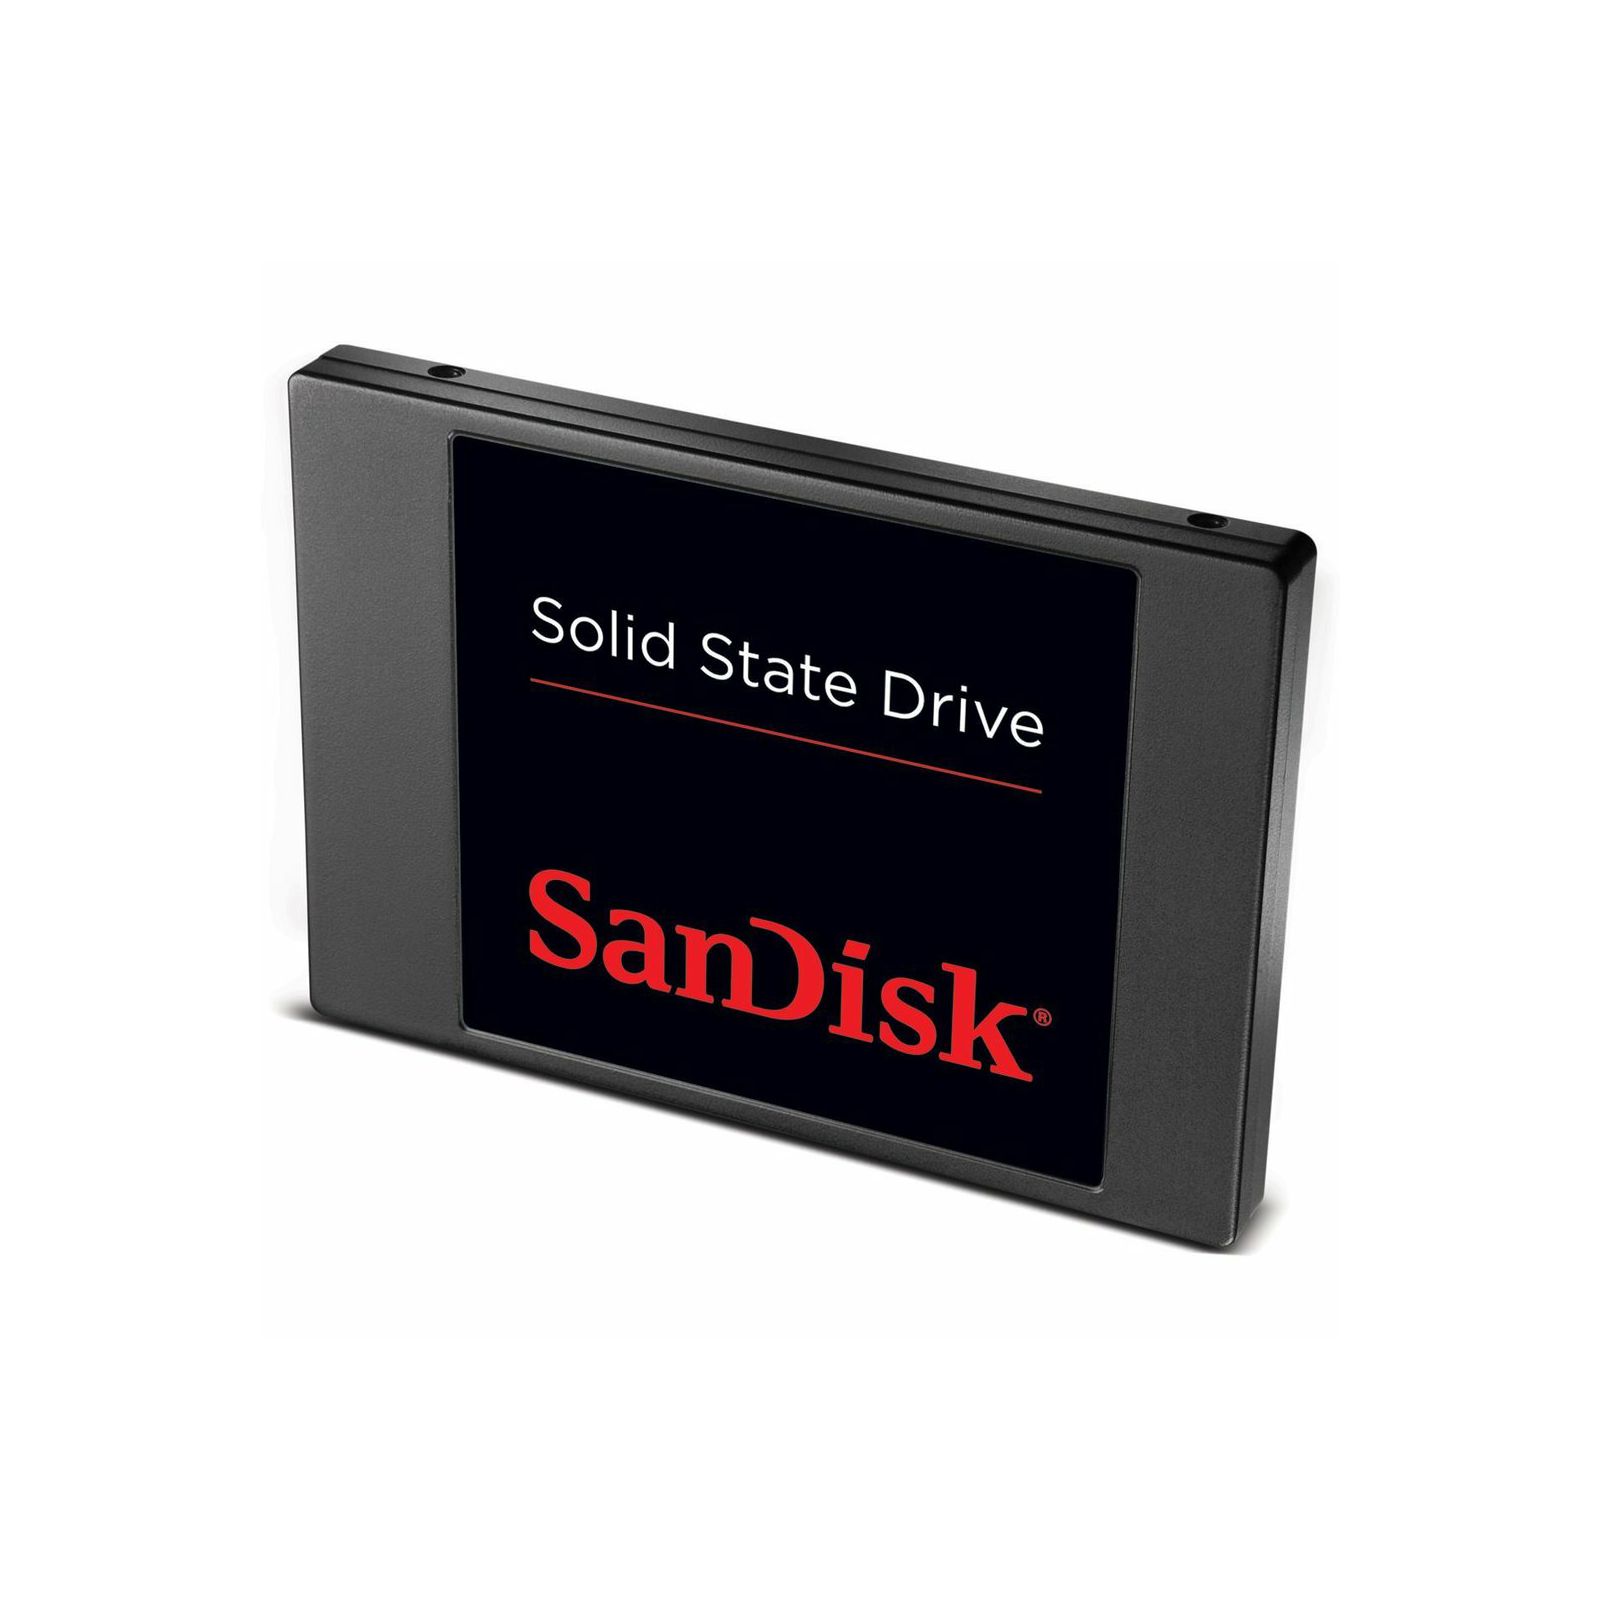 SanDisk SSD Pulse 64GB SDSSDP-064G-G25 Solid State Drive Disk